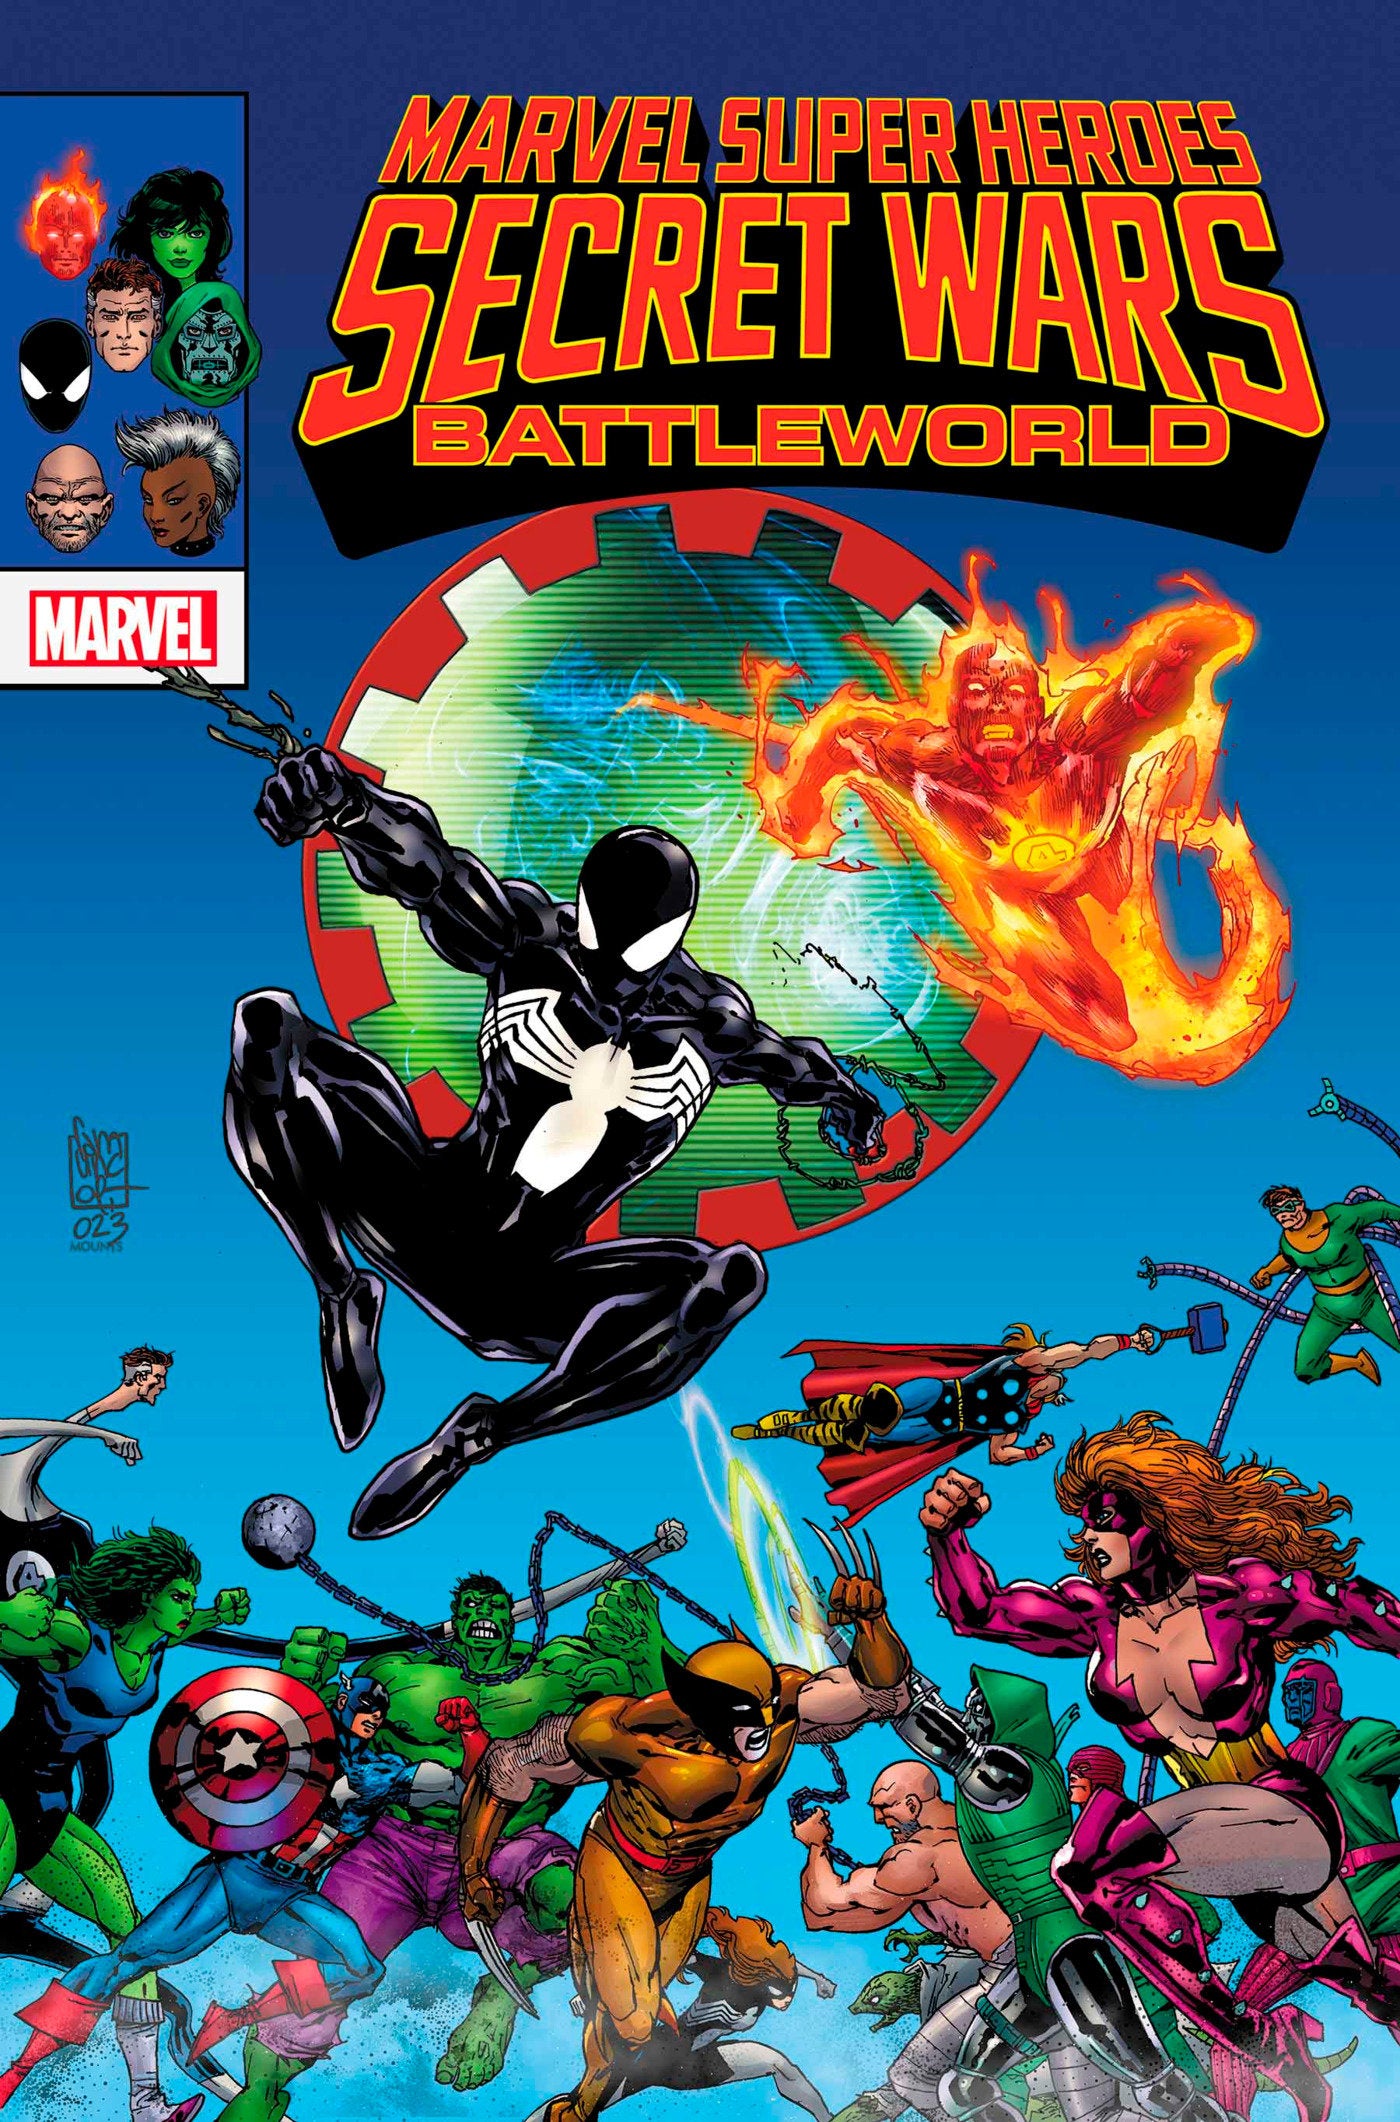 Marvel Super Heroes Secret Wars: Battleworld 1 | Game Master's Emporium (The New GME)